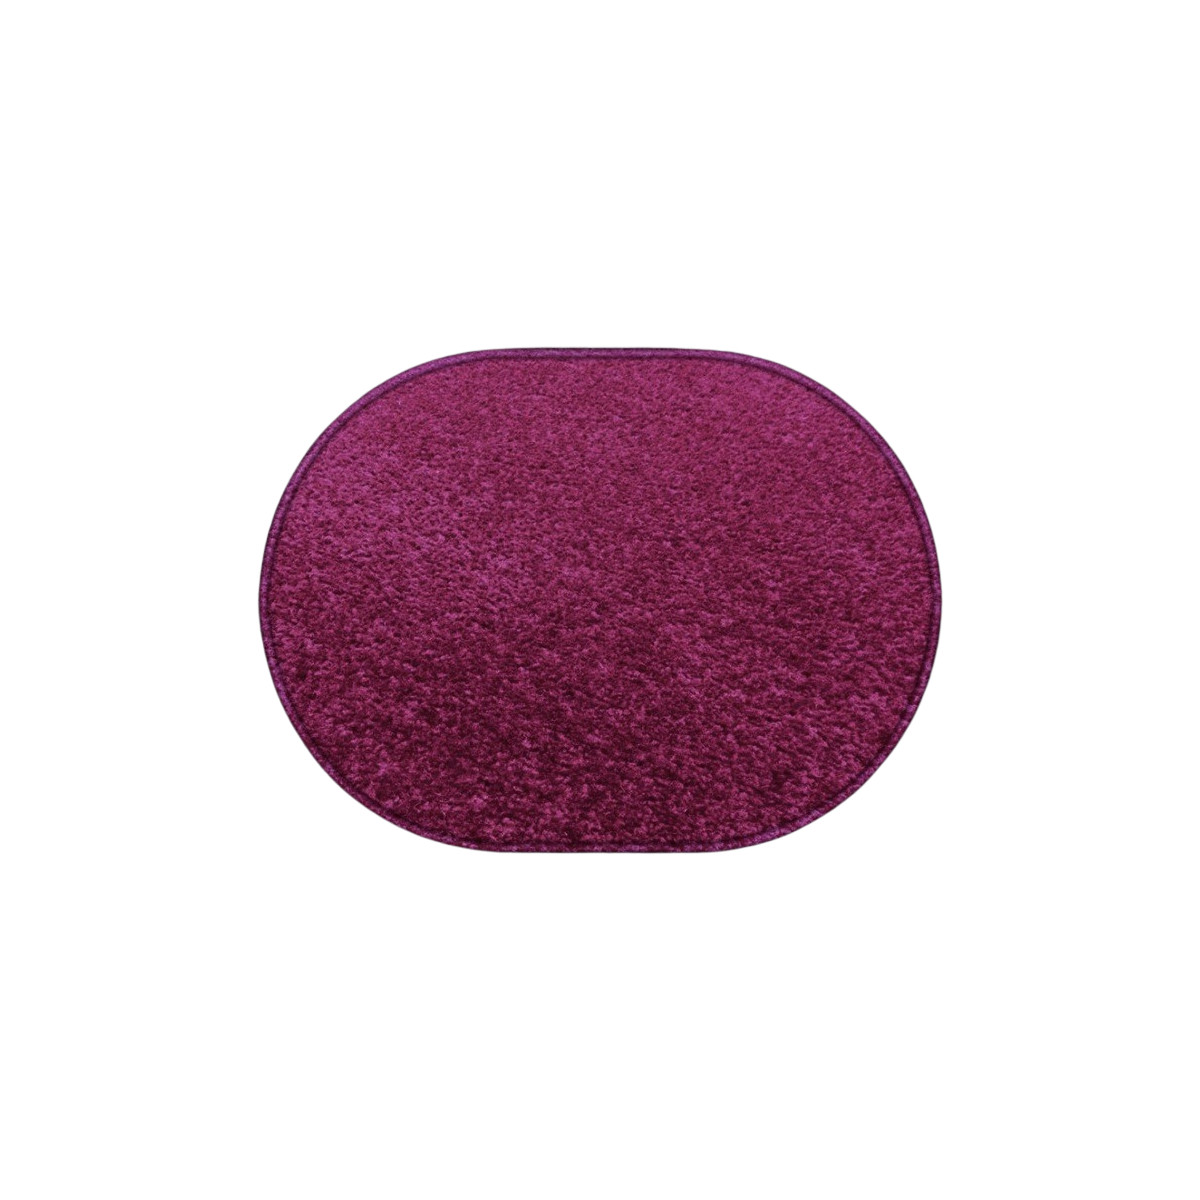 Kusový koberec Eton fialový ovál